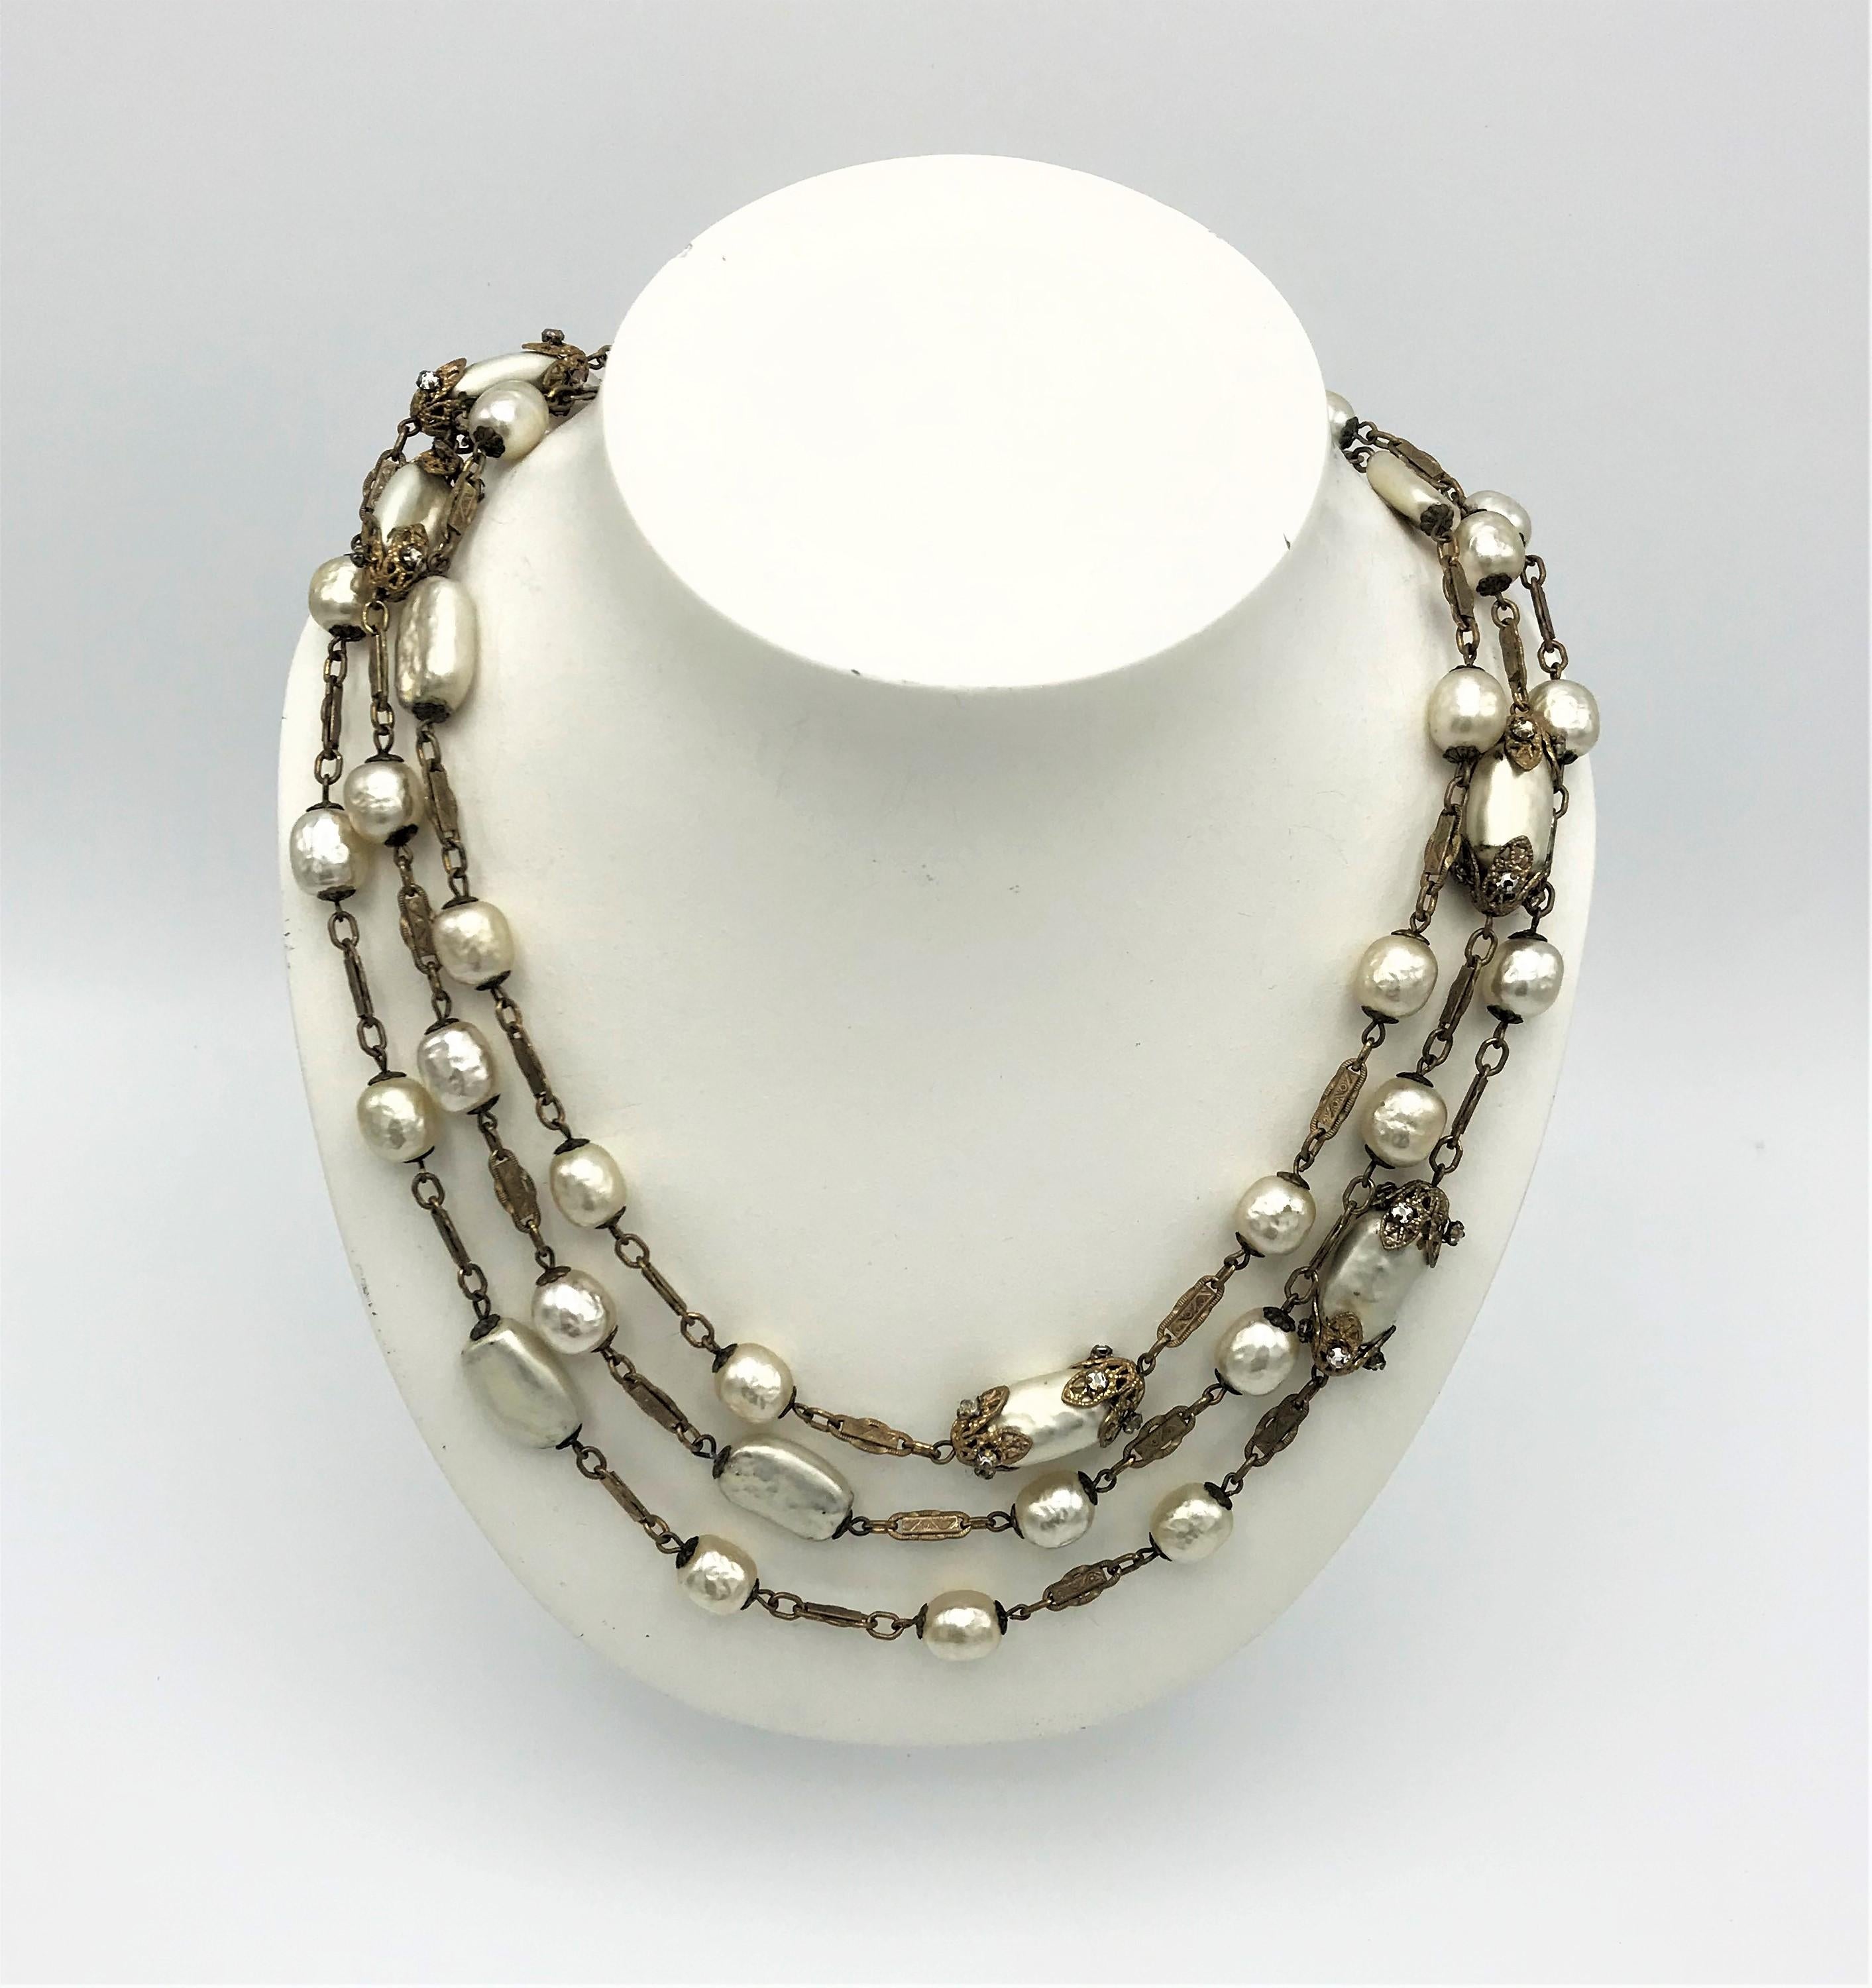 Exquis et long collier Miriam Haskell des années 1950 avec différentes perles baroques.  Ronde, ovale plate et ovale bordée de fines feuilles et d'accents en strass. Le collier est muni d'un fermoir à anneau à ressort et porte à côté la plaque de